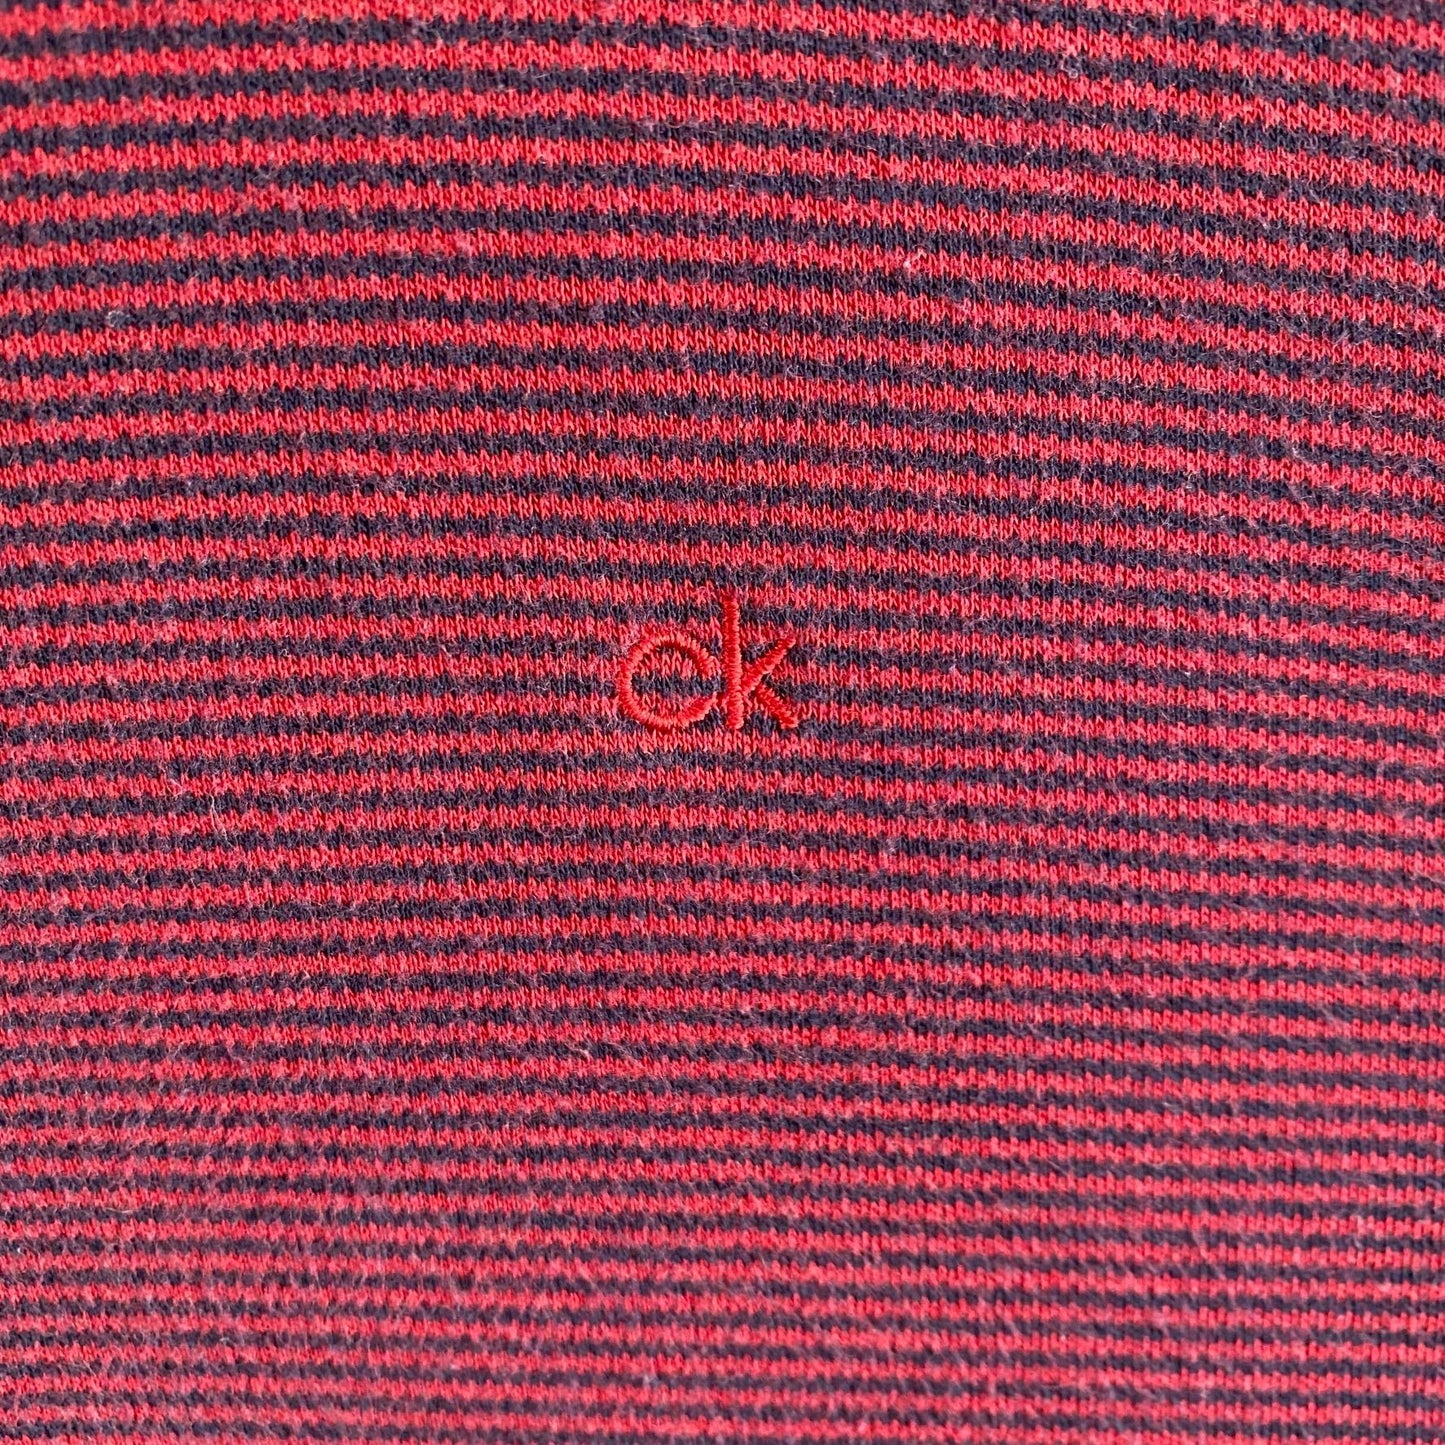 Calvin Klein Striped Polo Shirt